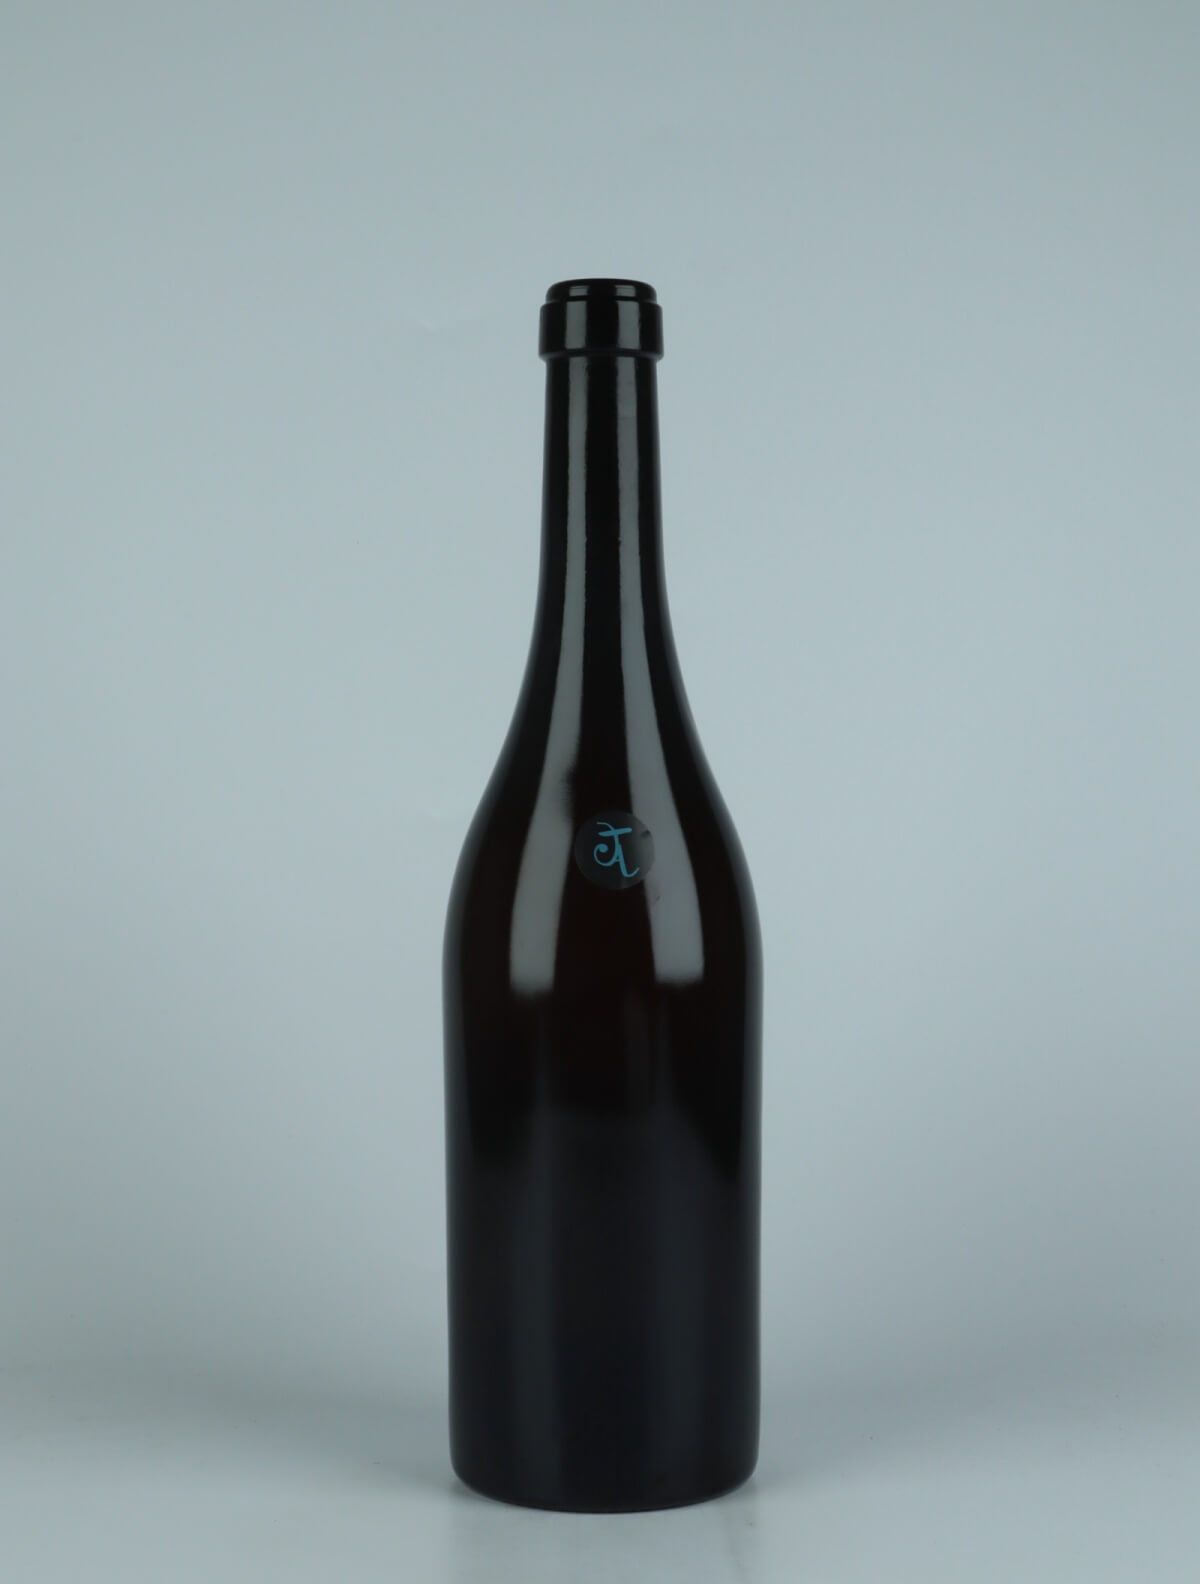 A bottle 2021 Vi Blanc Orange wine from Els Jelipins, Penedès in Spain